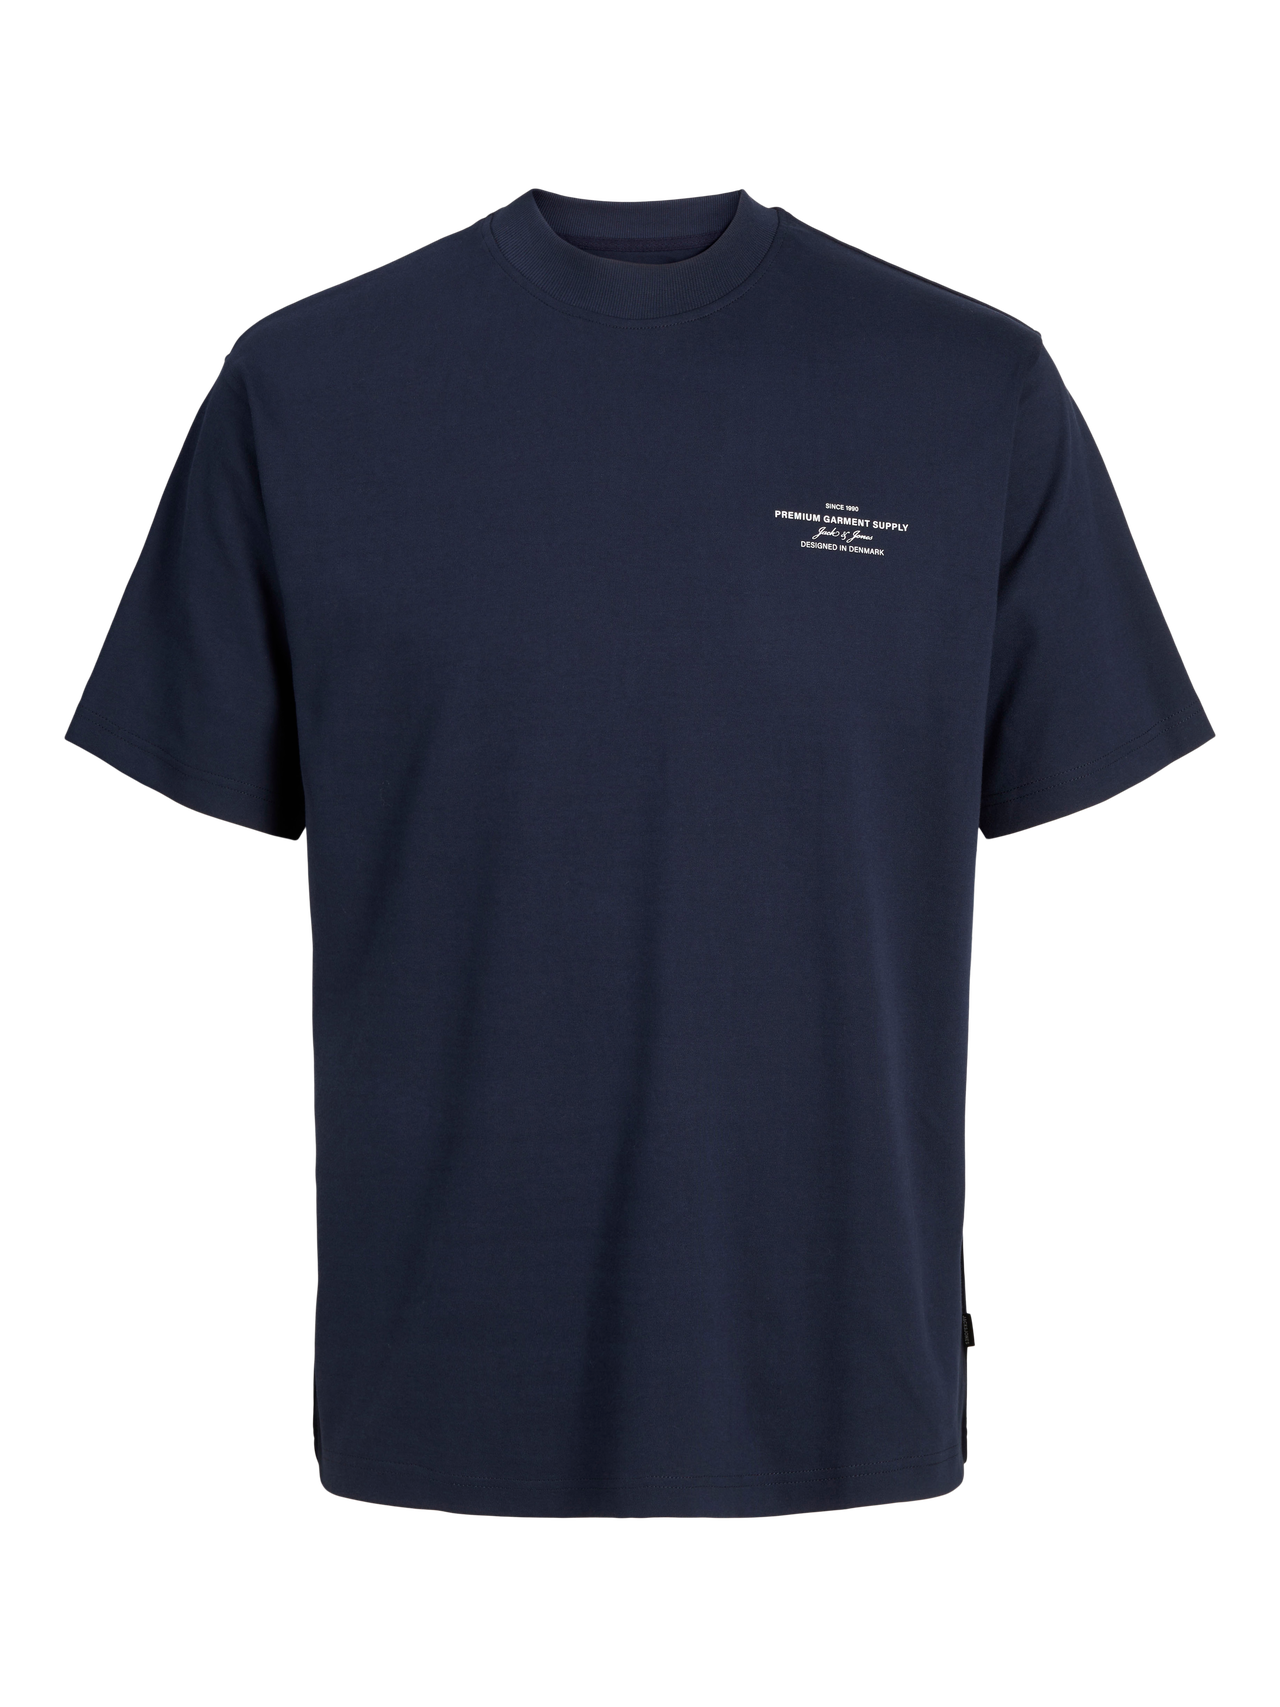 Jack & Jones T-shirt Imprimé Col rond -Night Sky - 12259357